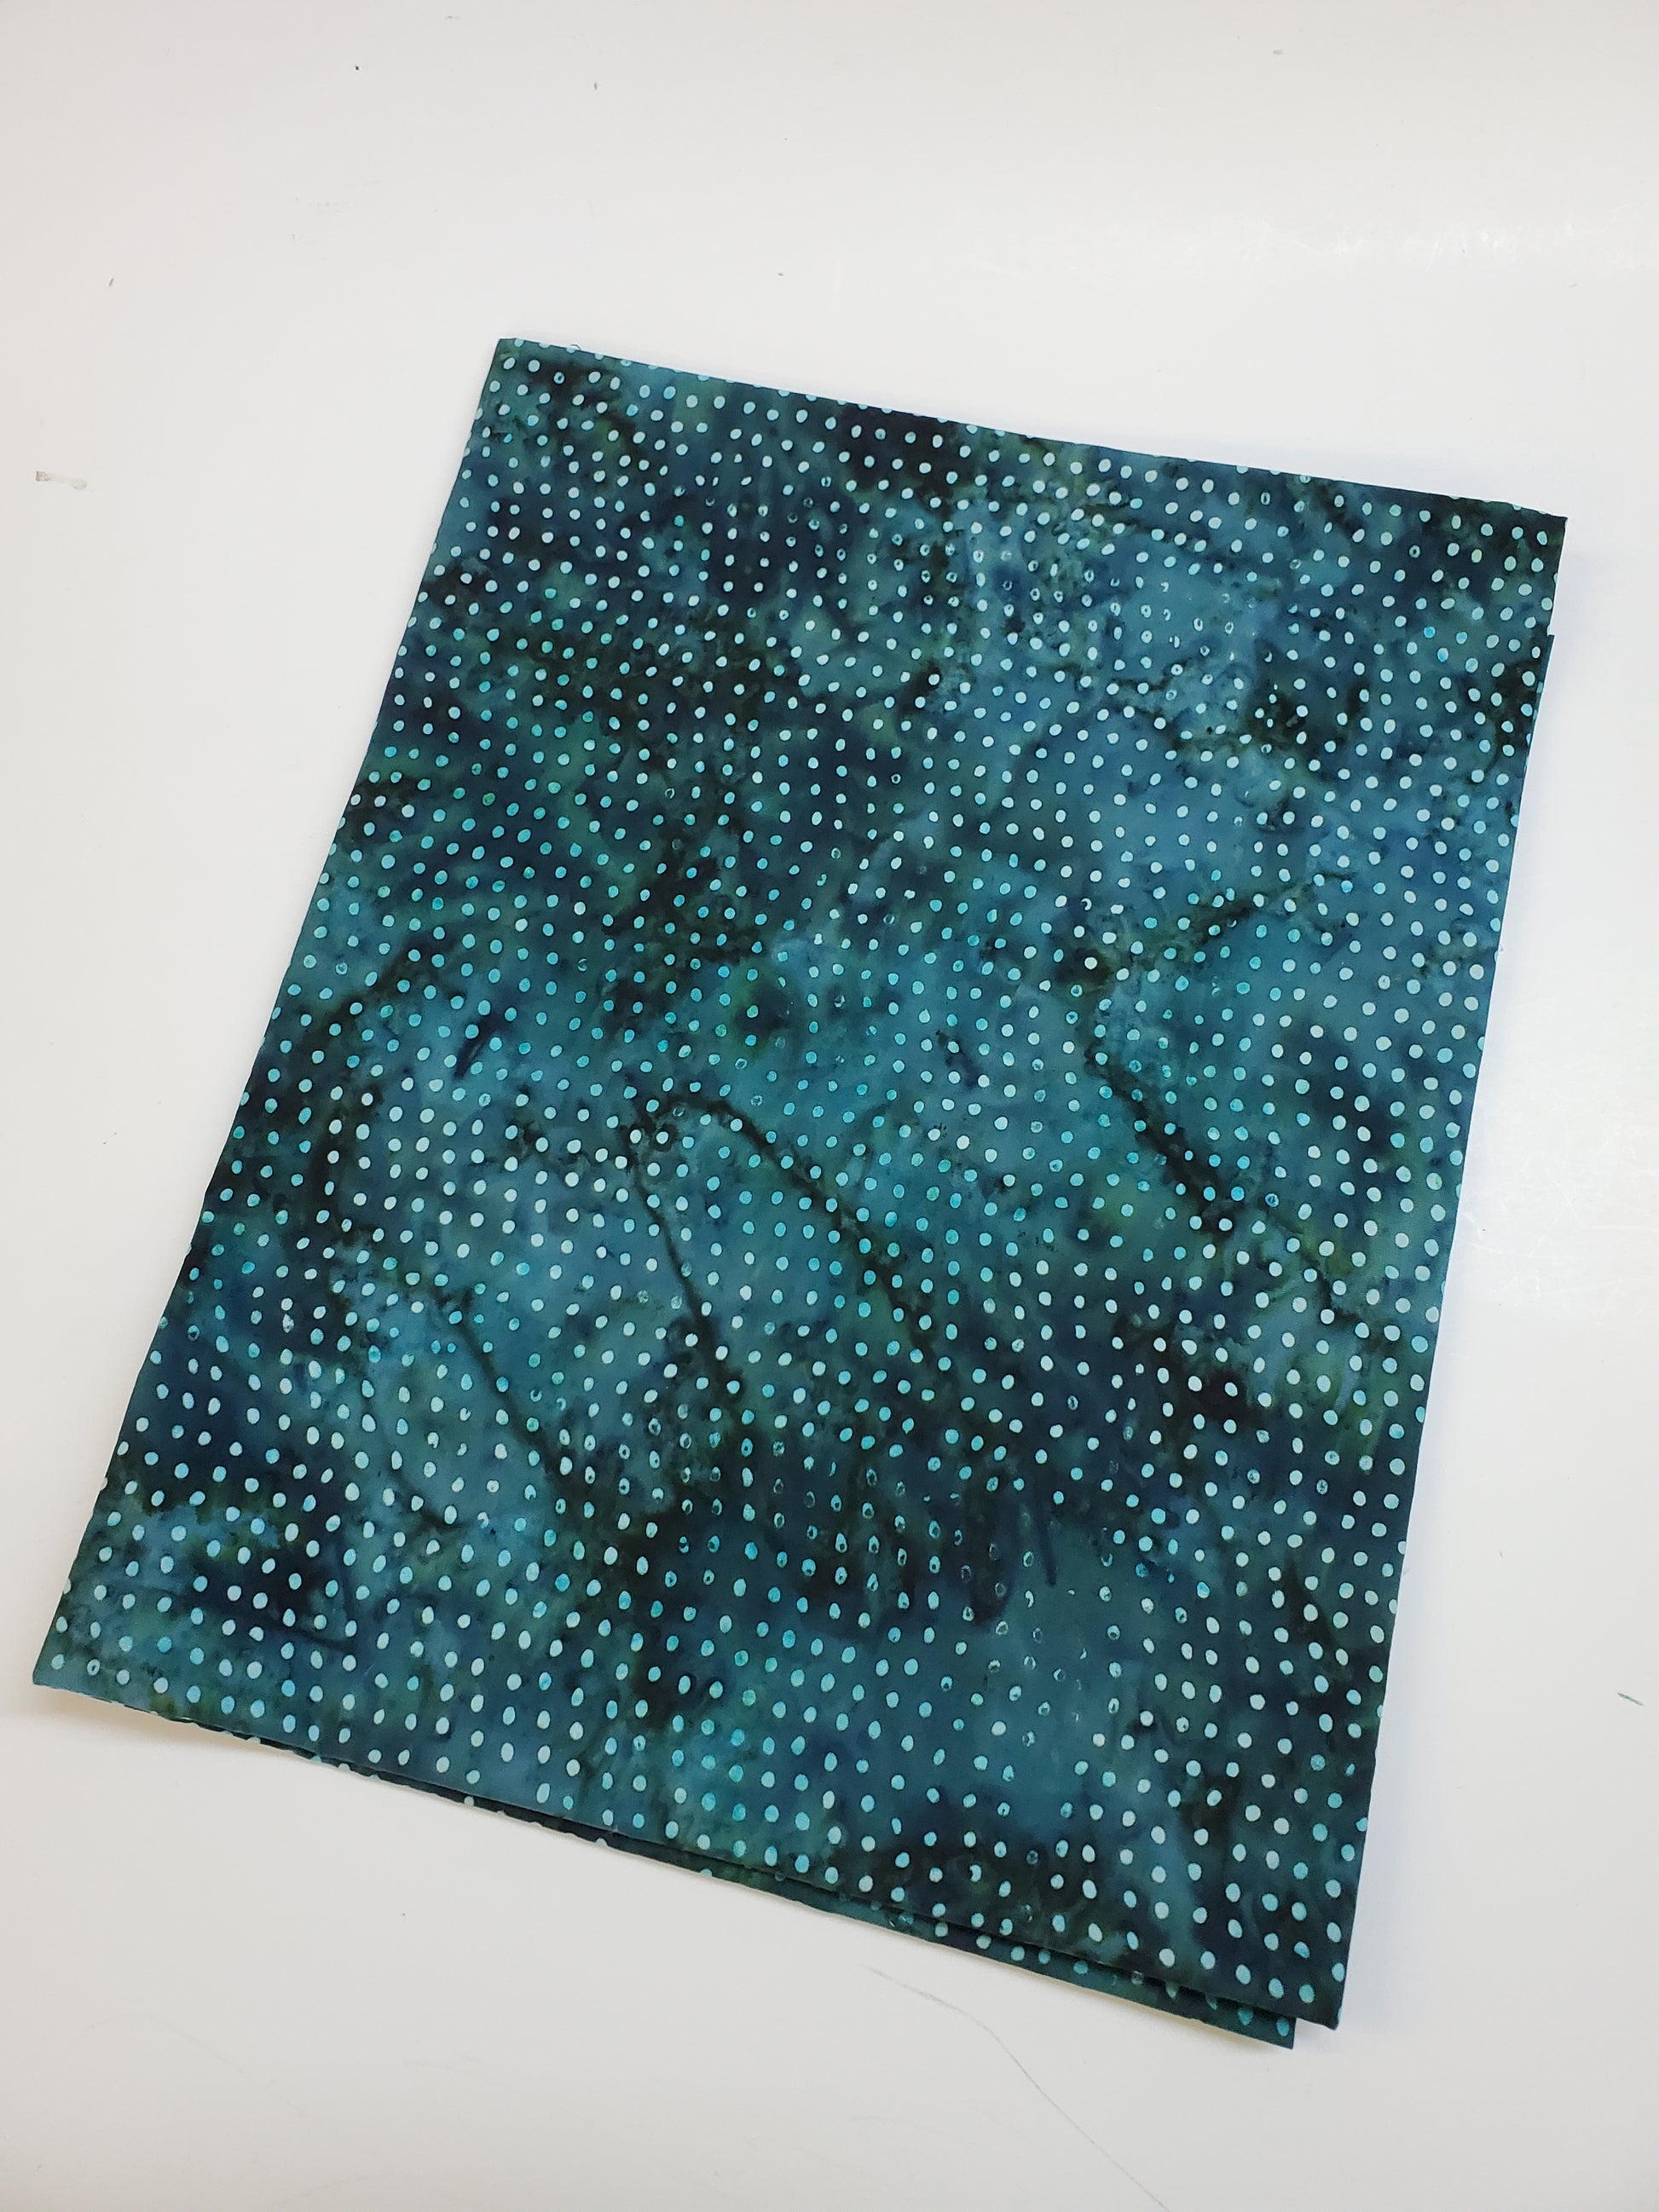 Fabric in micro modal - teal